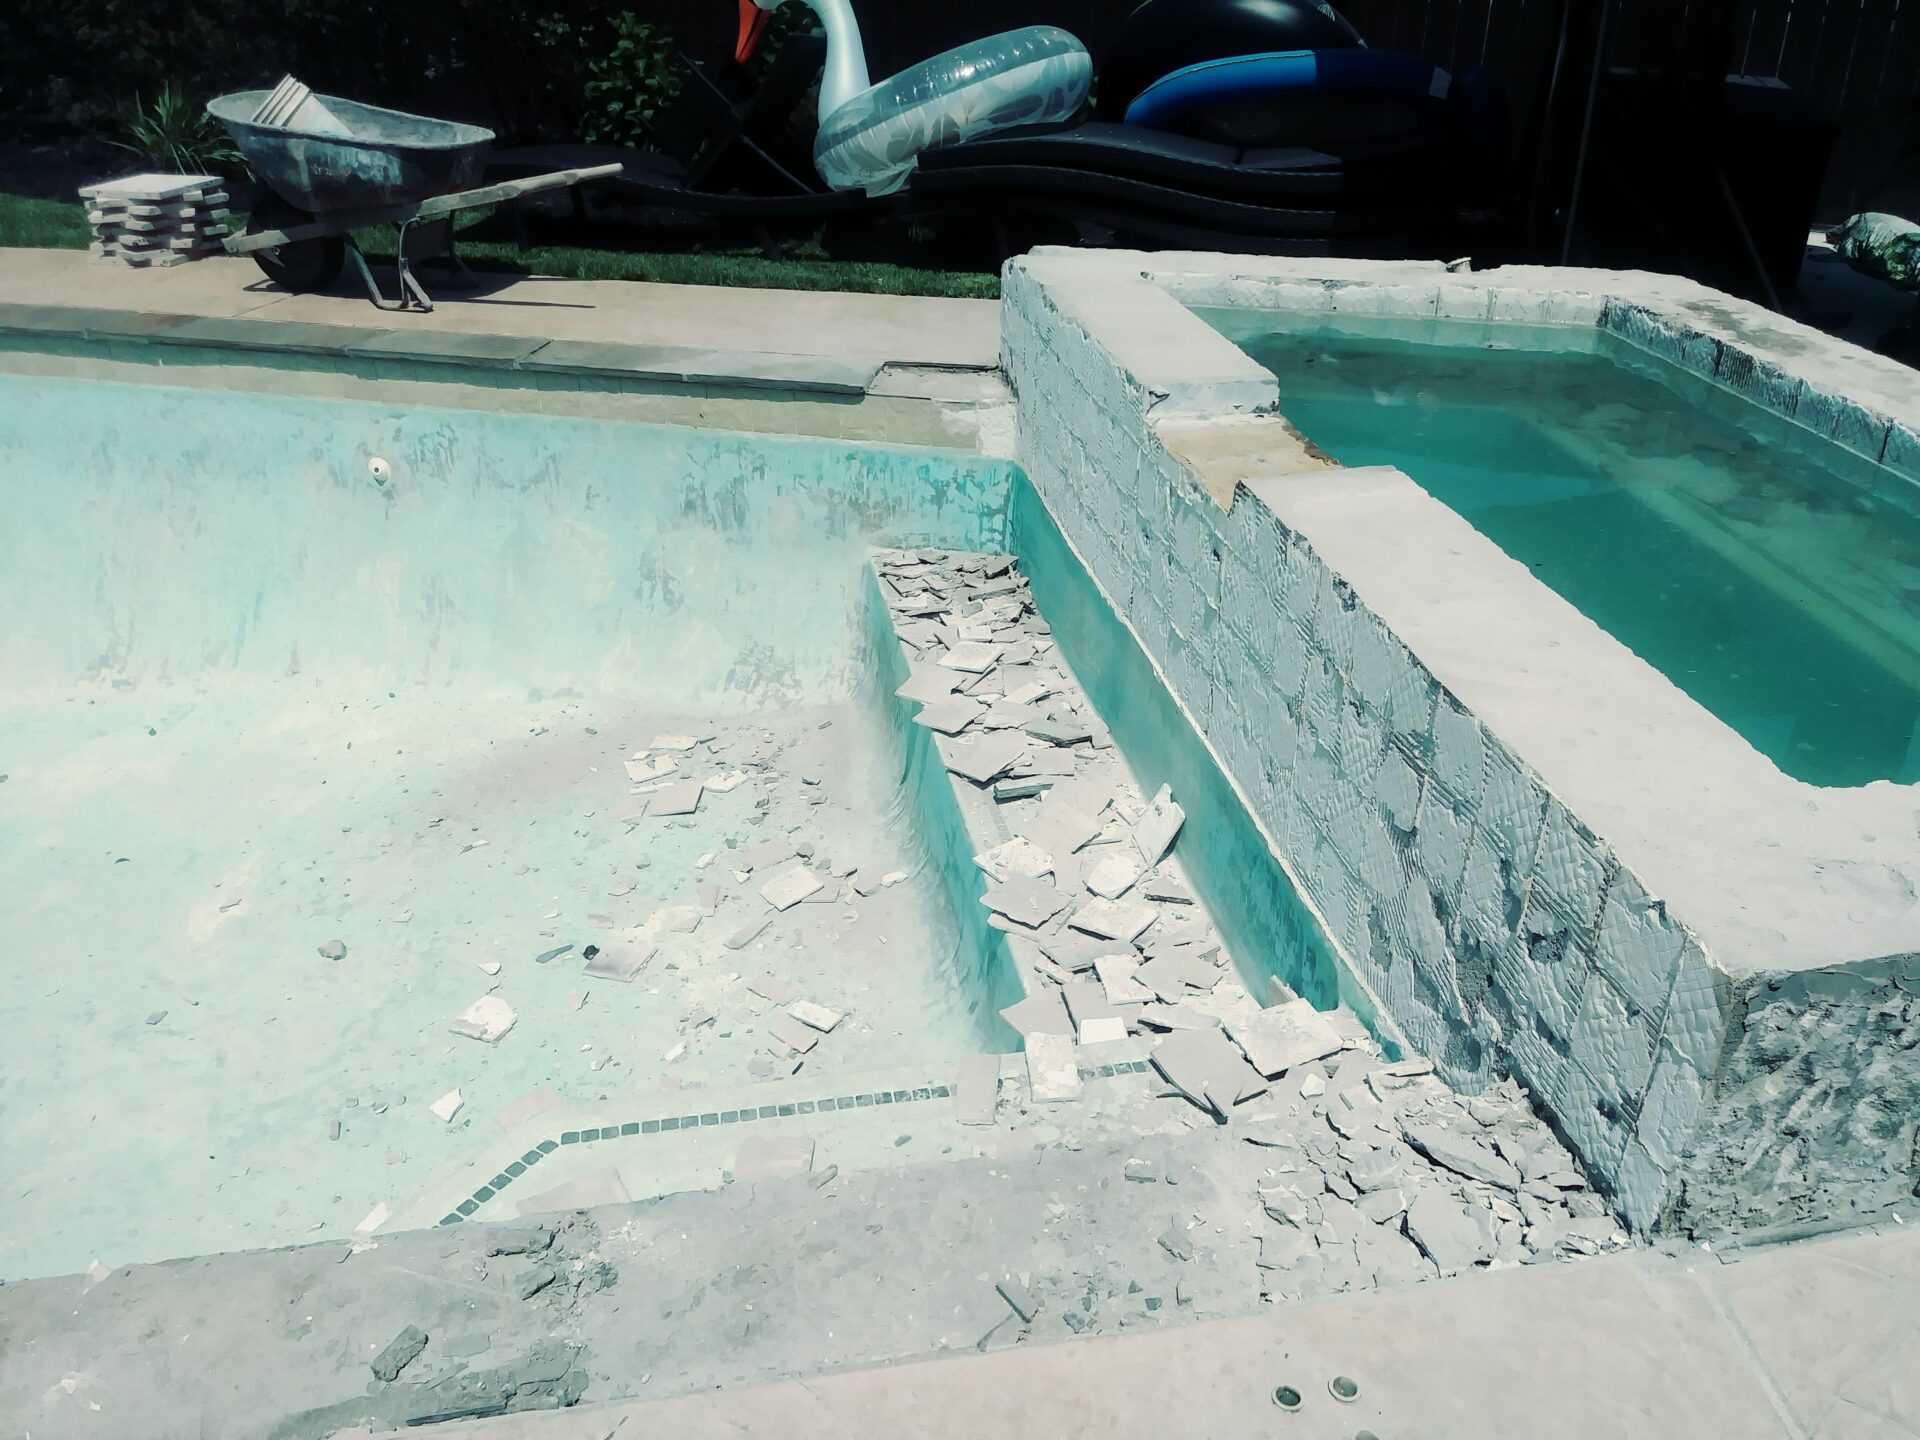 Pool Remodel - Katy - Before Image005